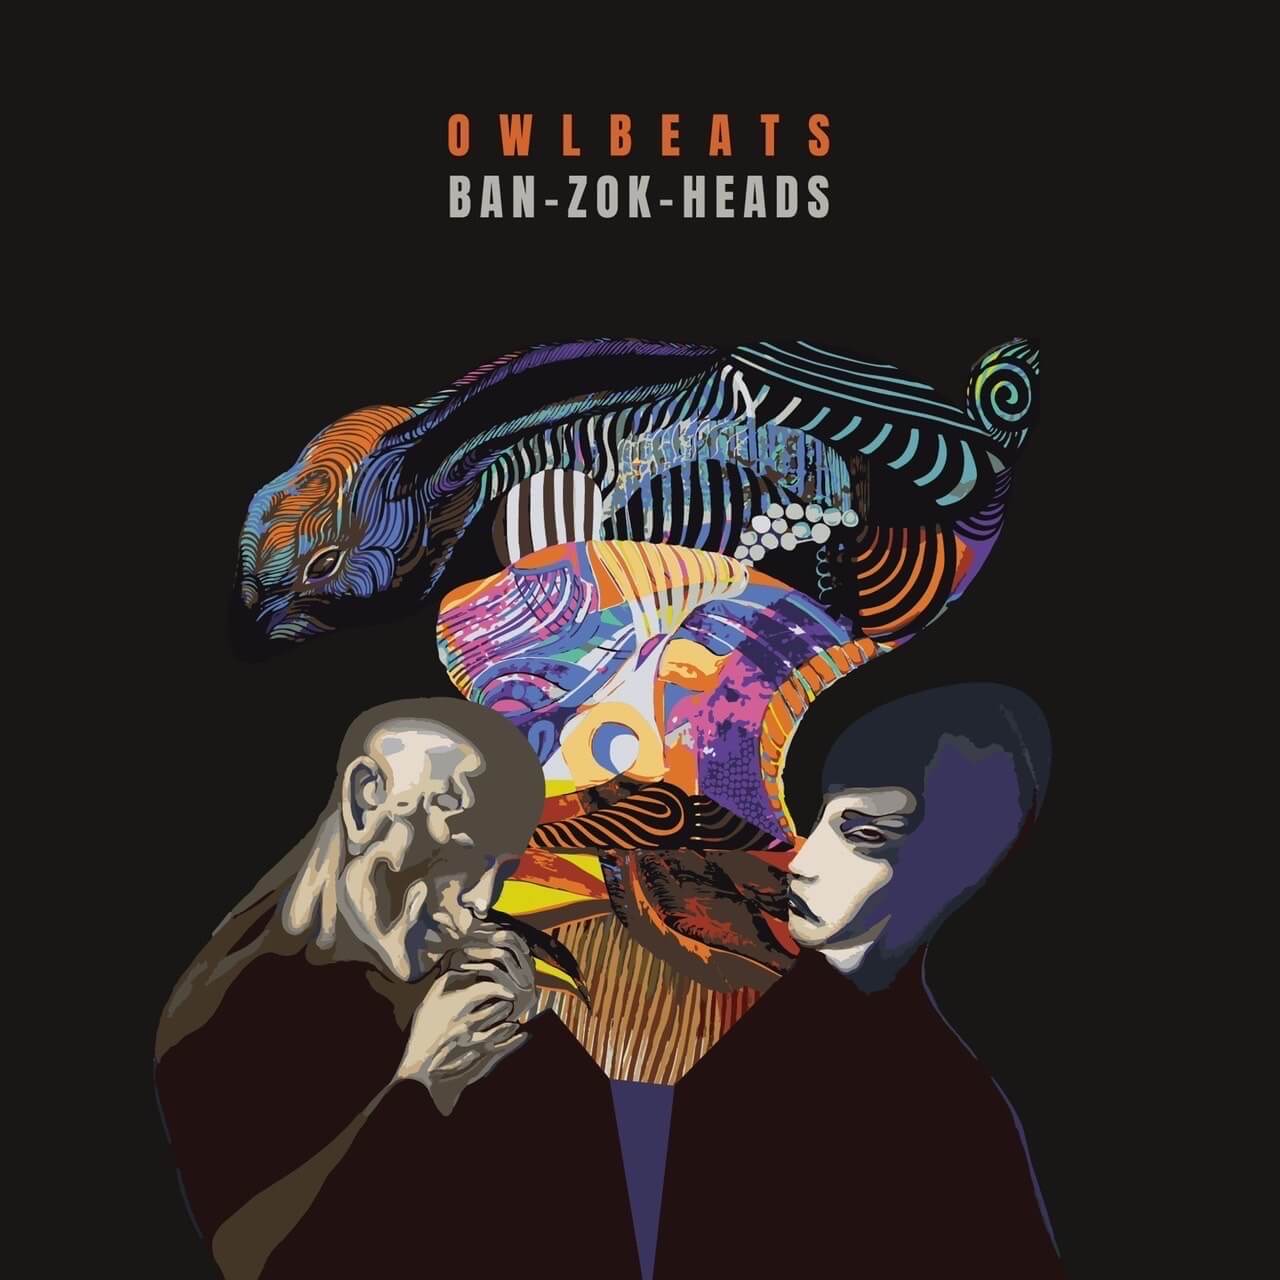 ビートメーカーOWL BEATSが待望のニューアルバム『BAN-ZOK-HEADZ』をリリース｜客演にKOYOsax、アートワークはATOSONE music230208-owlbeats-1